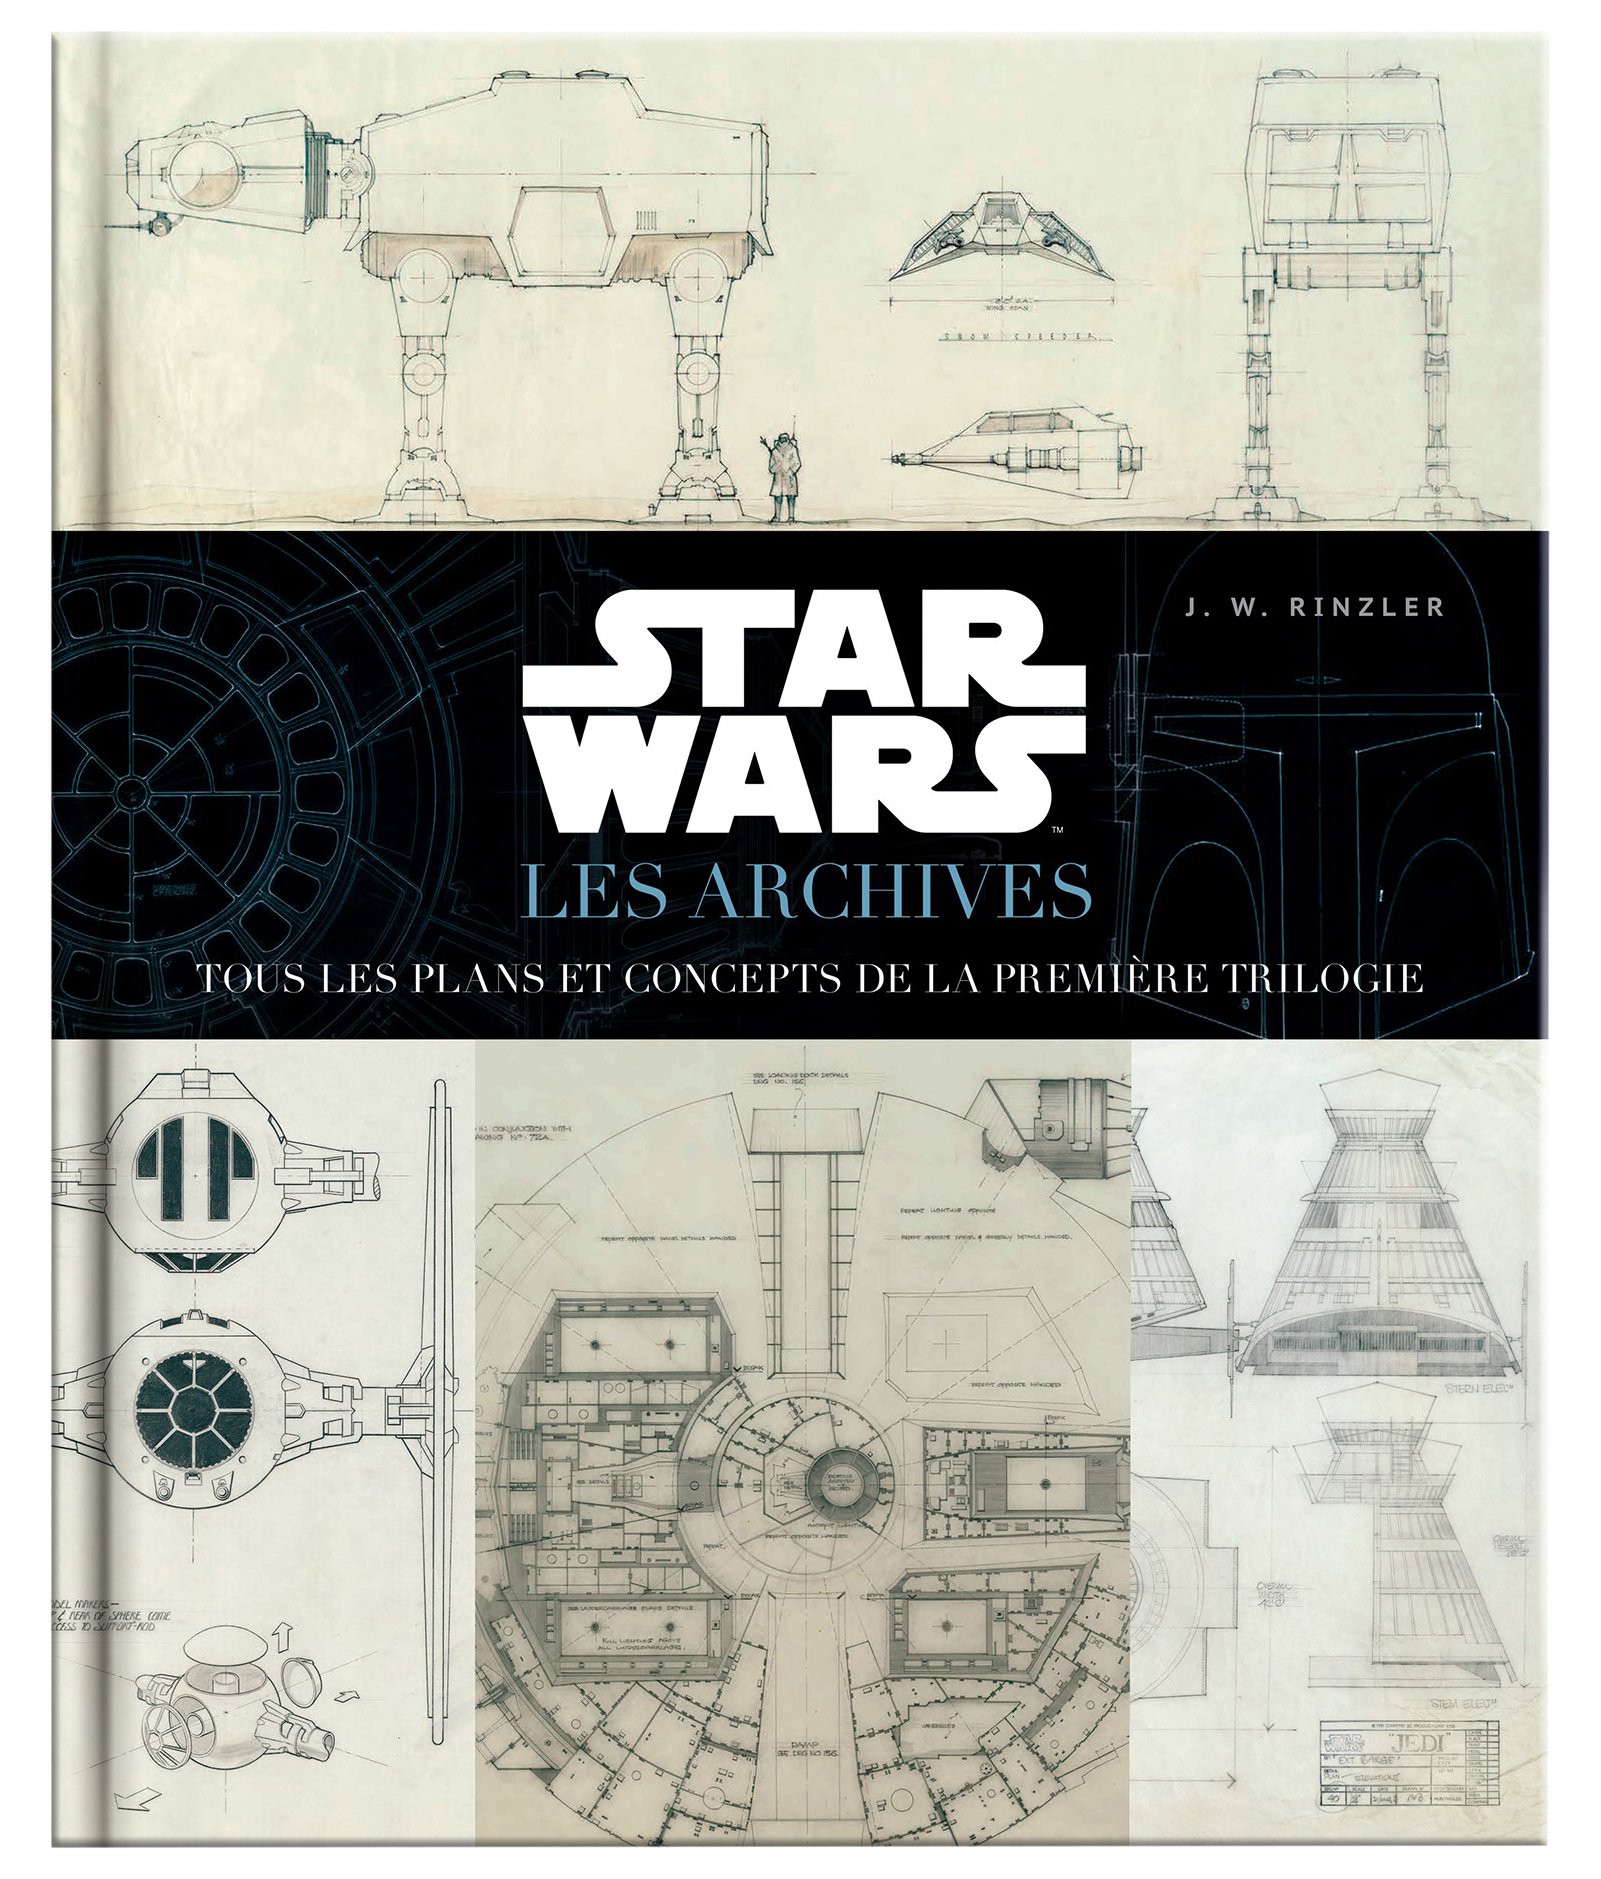 Star Wars : Les Archives — Tous les plans et concept de la première trilogie